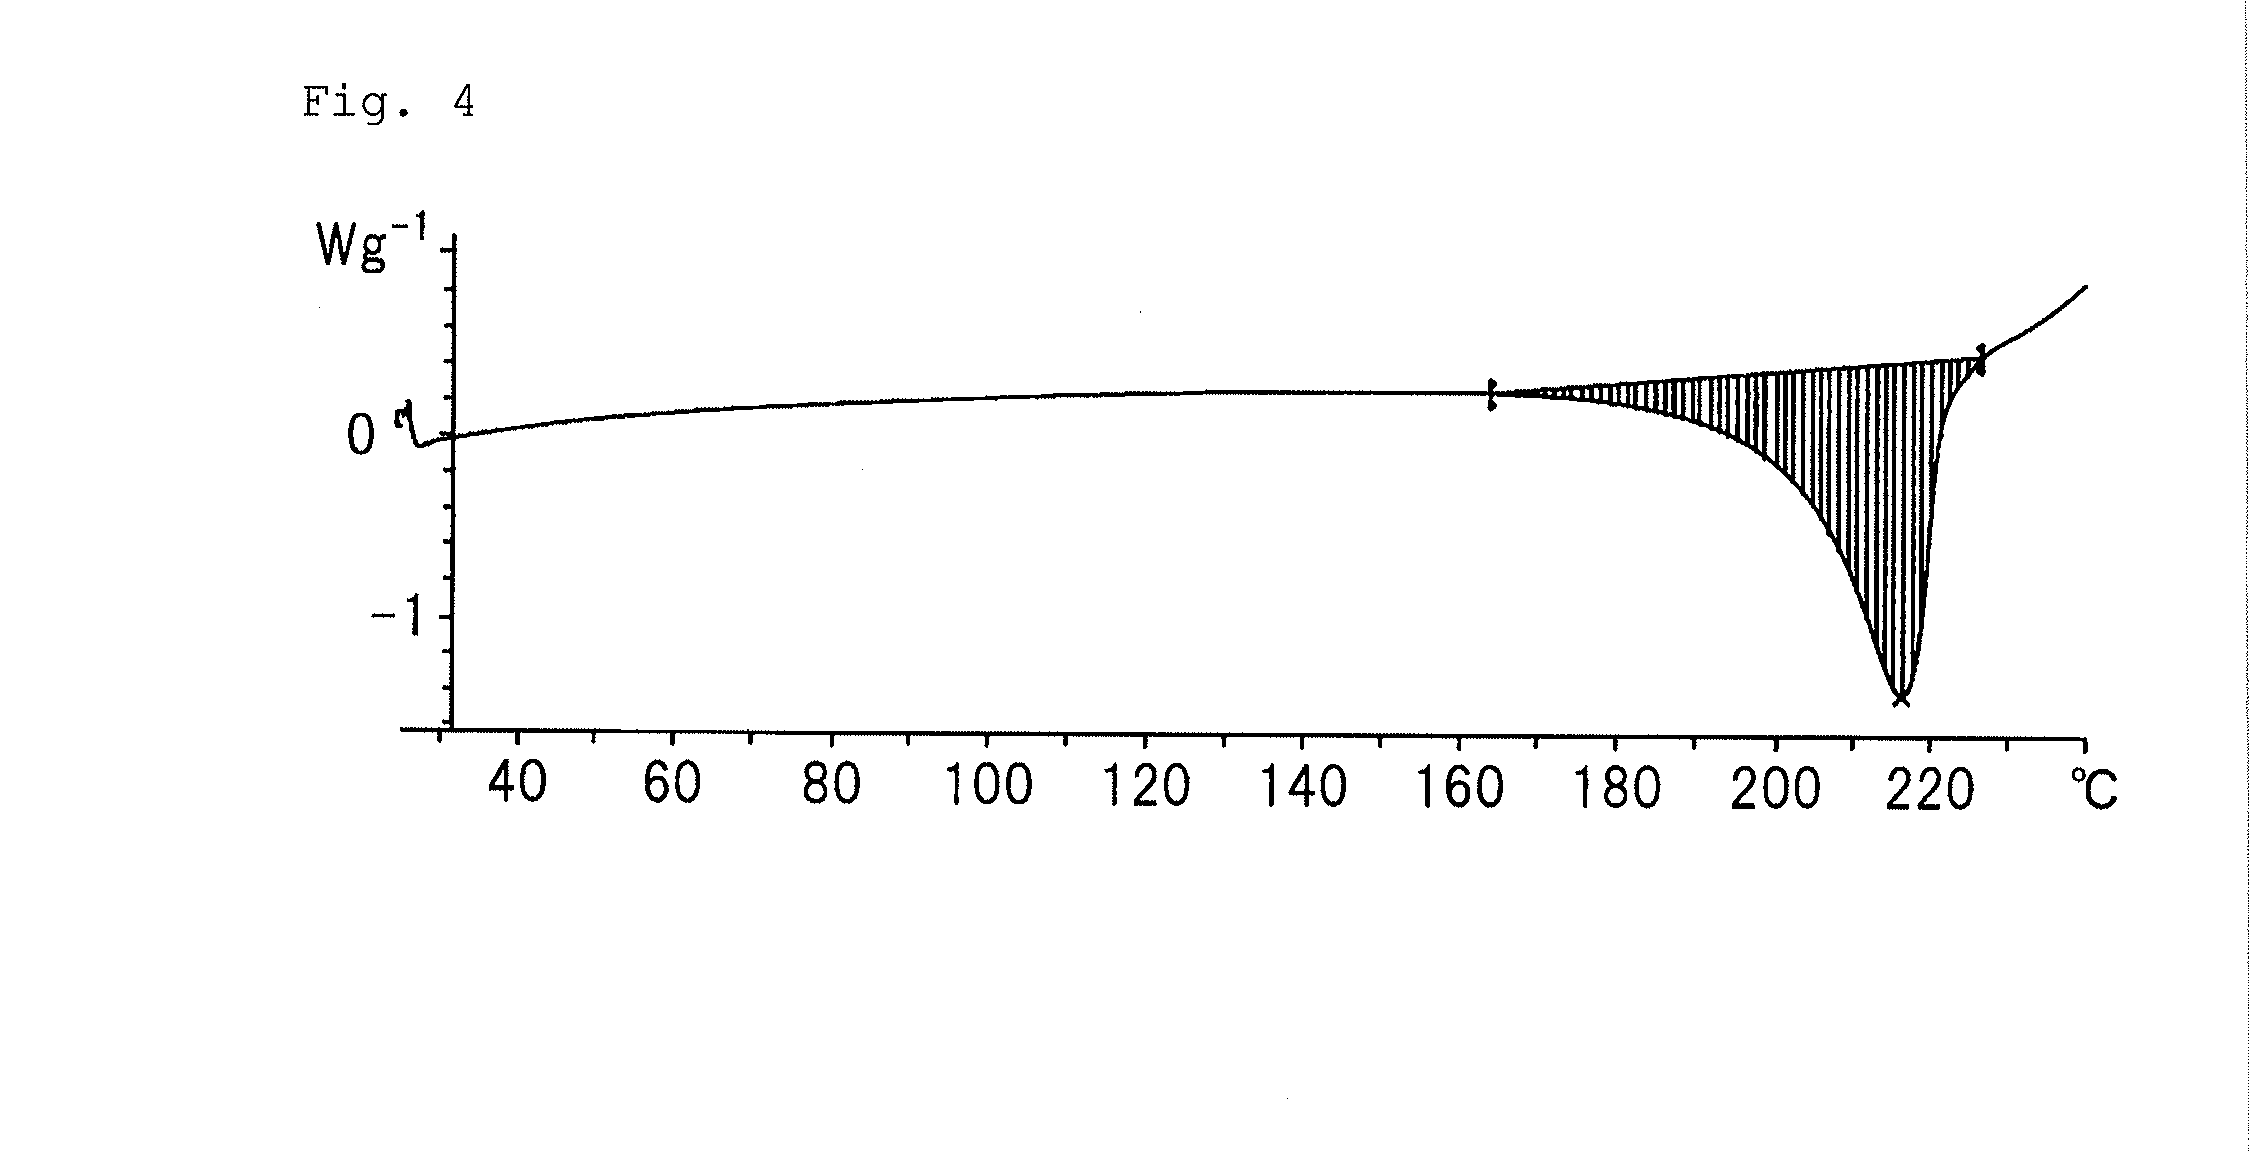 Purinone derivative hydrochloride